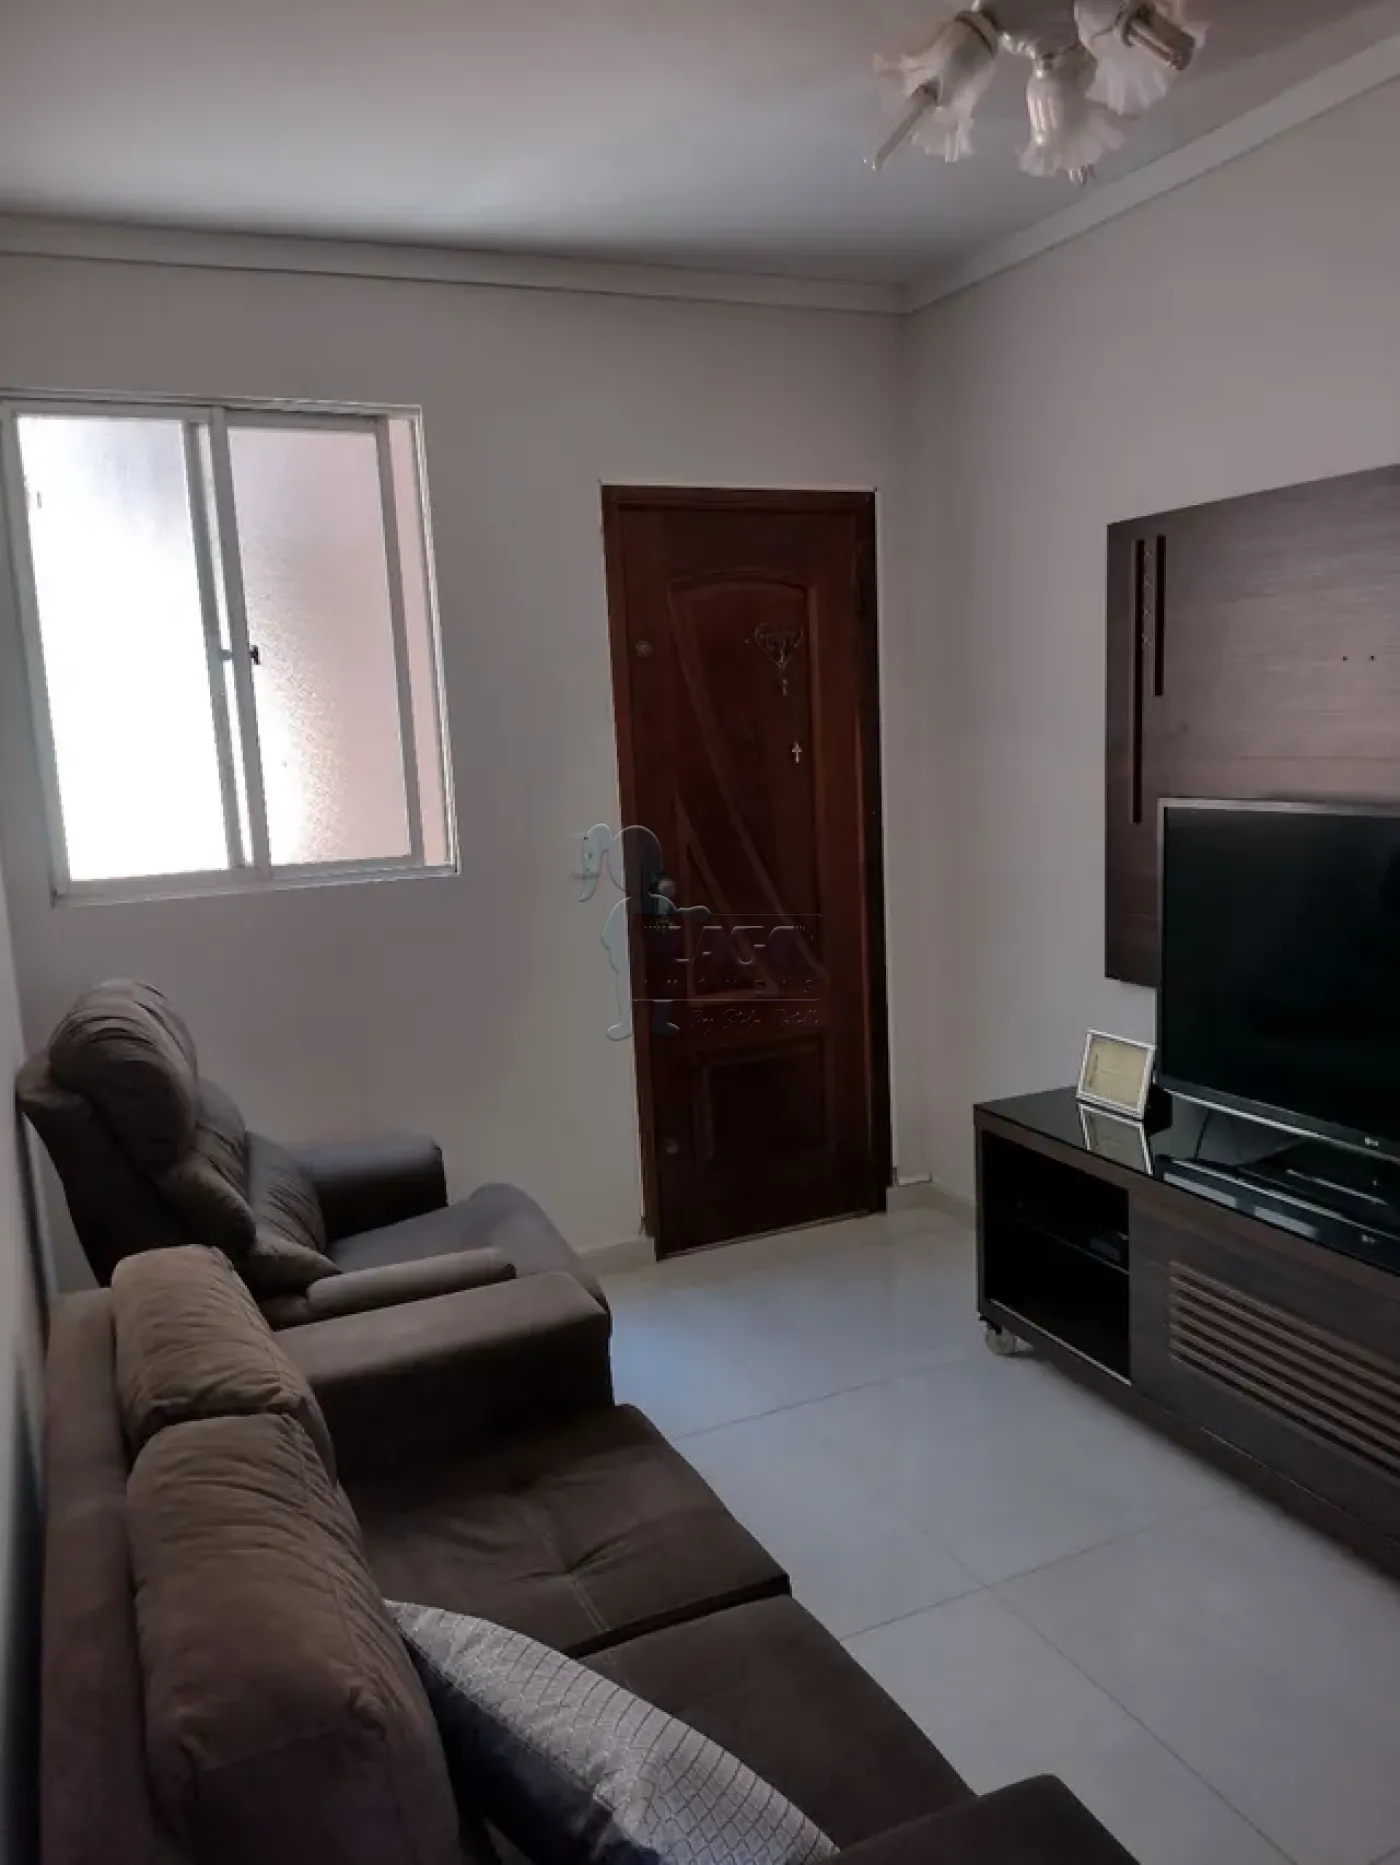 Comprar Apartamentos / Padrão em Ribeirão Preto R$ 160.000,00 - Foto 6